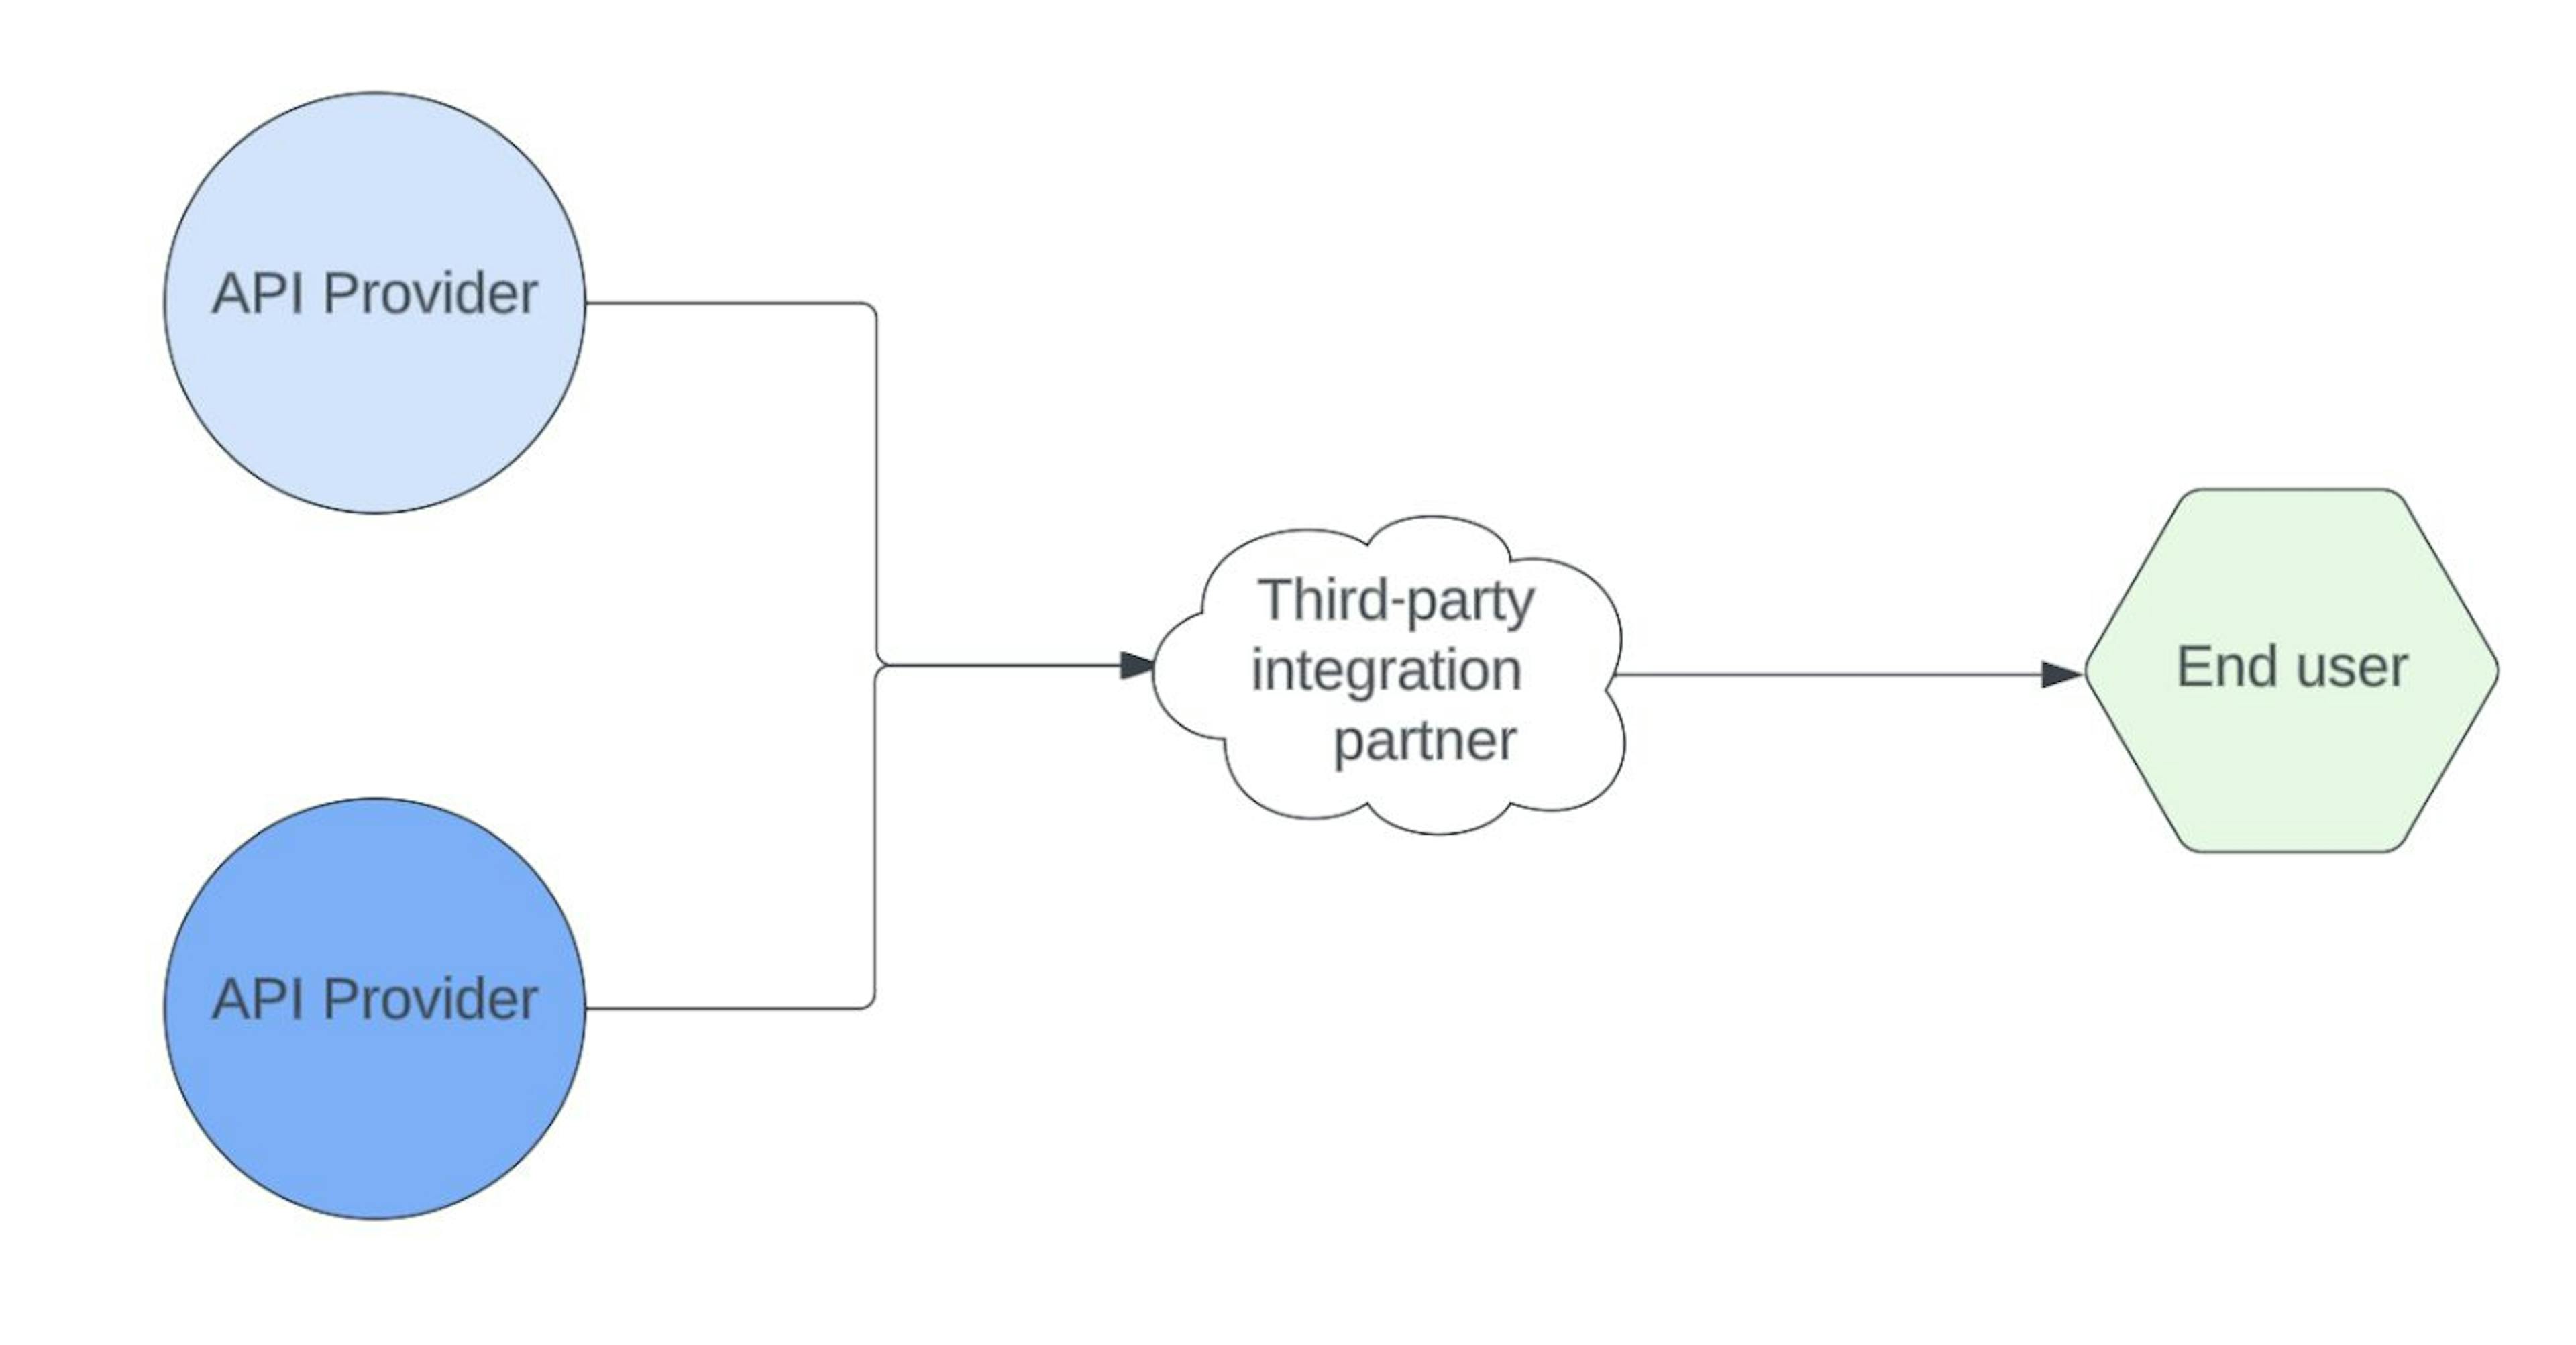 Une cartographie d'intégration appropriée est essentielle pour des transferts de données réussis et cohérents